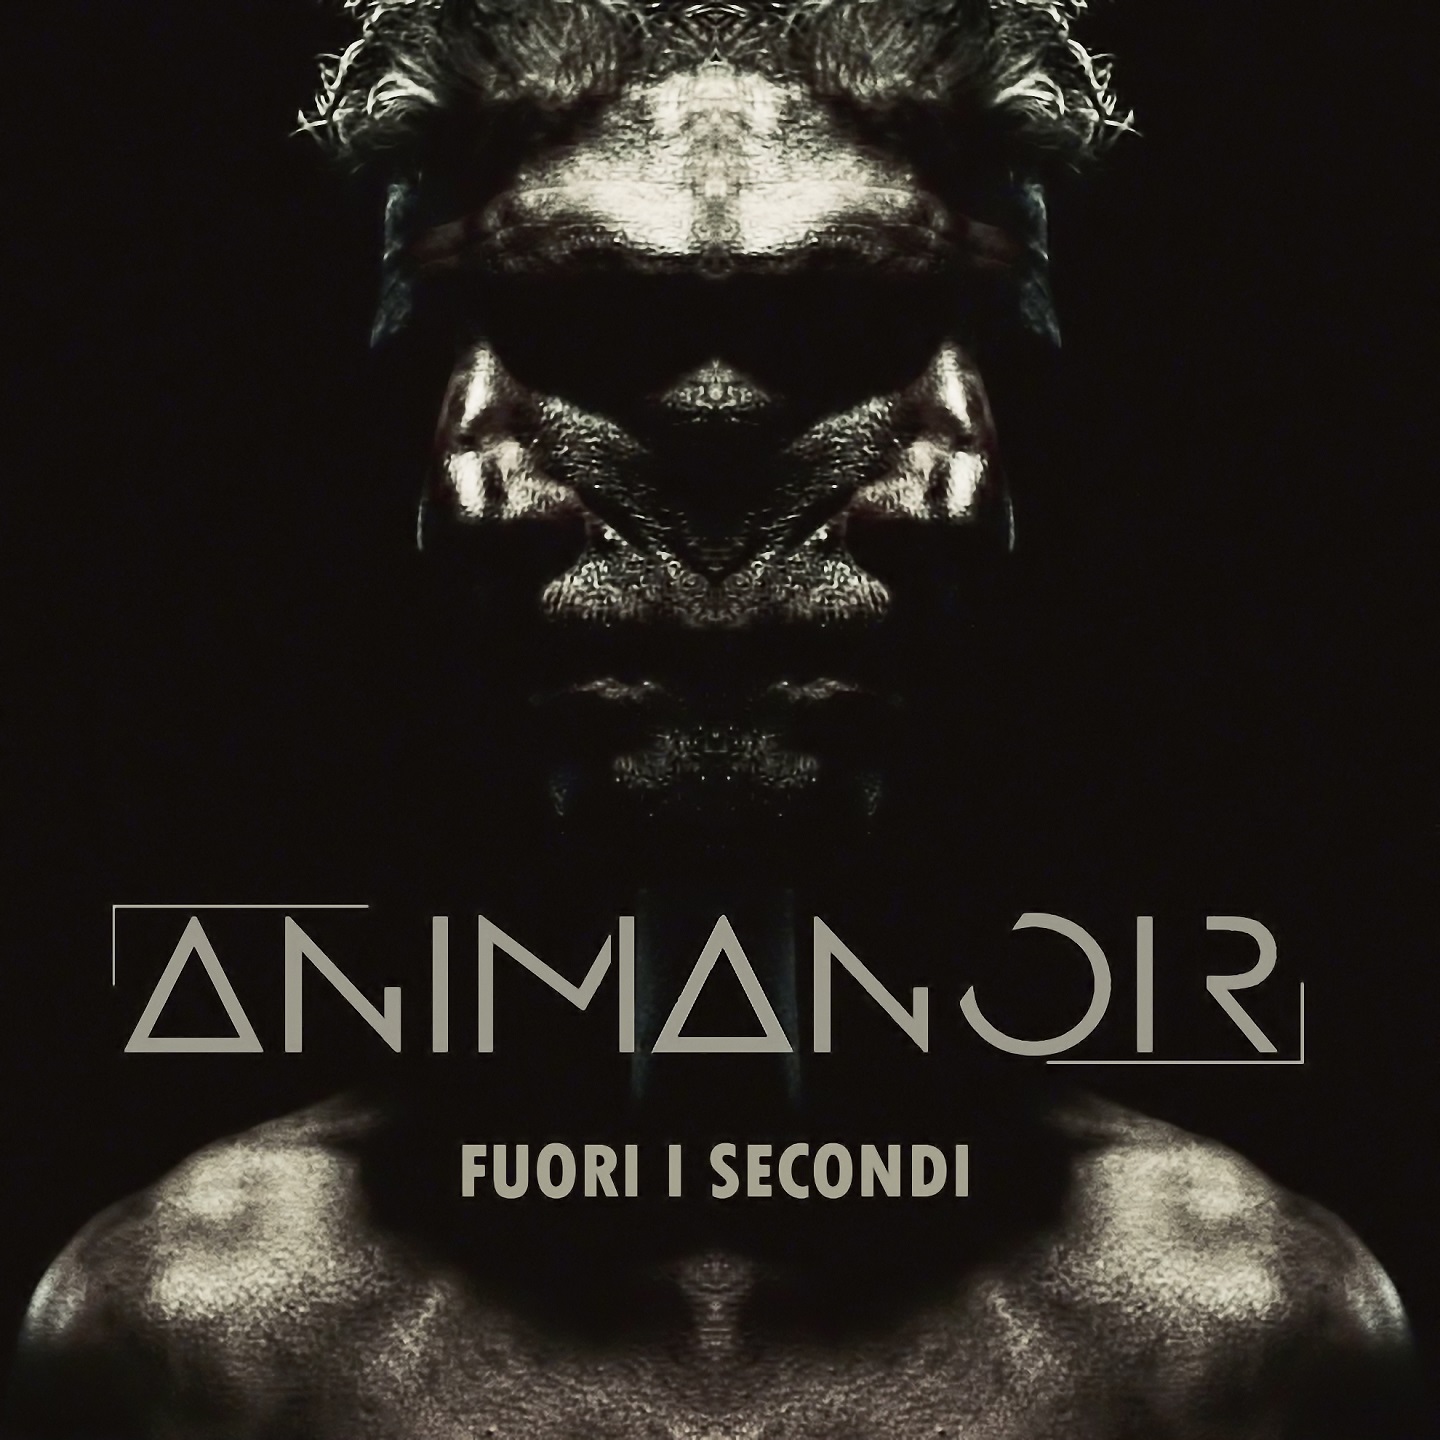 “Fuori i secondi” il nuovo singolo della band leccese Animanoir